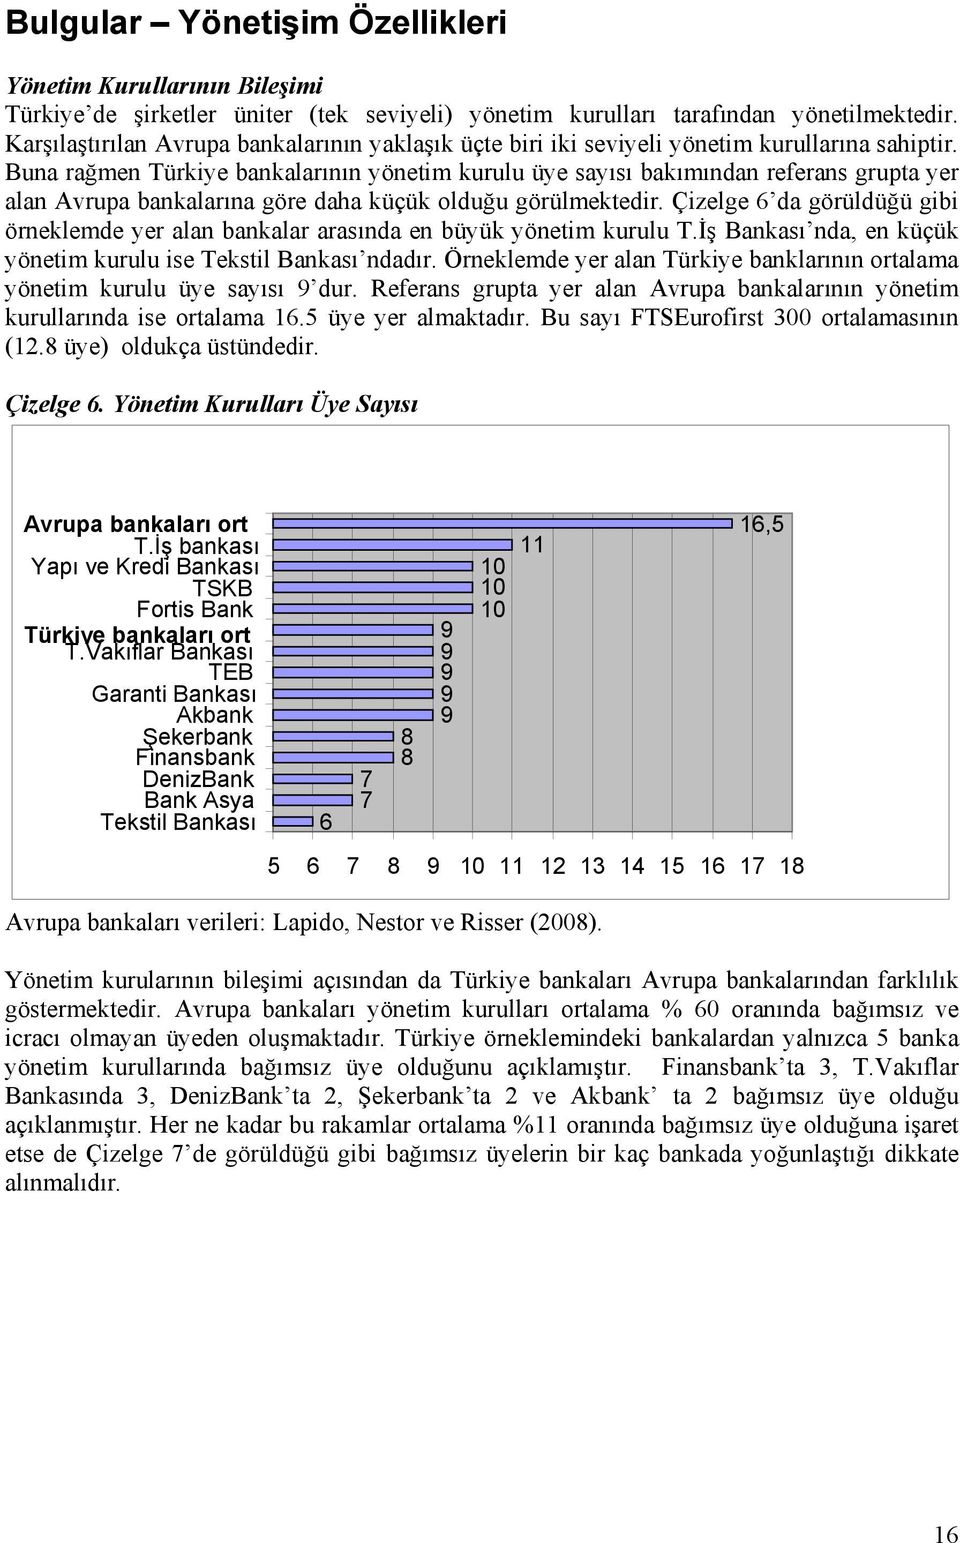 Buna rağmen Türkiye bankalarının yönetim kurulu üye sayısı bakımından referans grupta yer alan Avrupa bankalarına göre daha küçük olduğu görülmektedir.